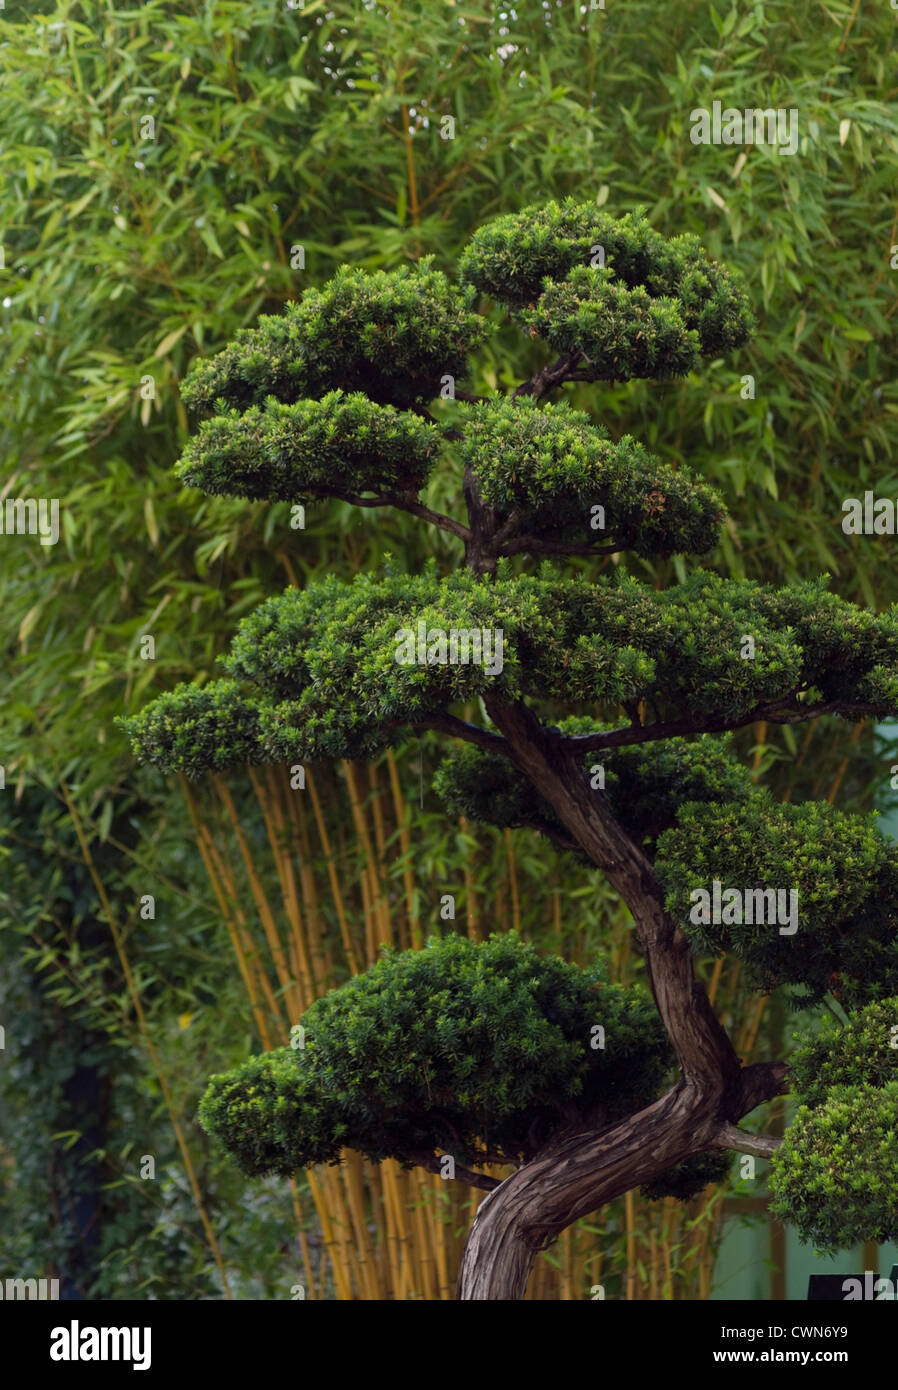 Taxus cuspidata, Bonsai, Japanese yew Stock Photo